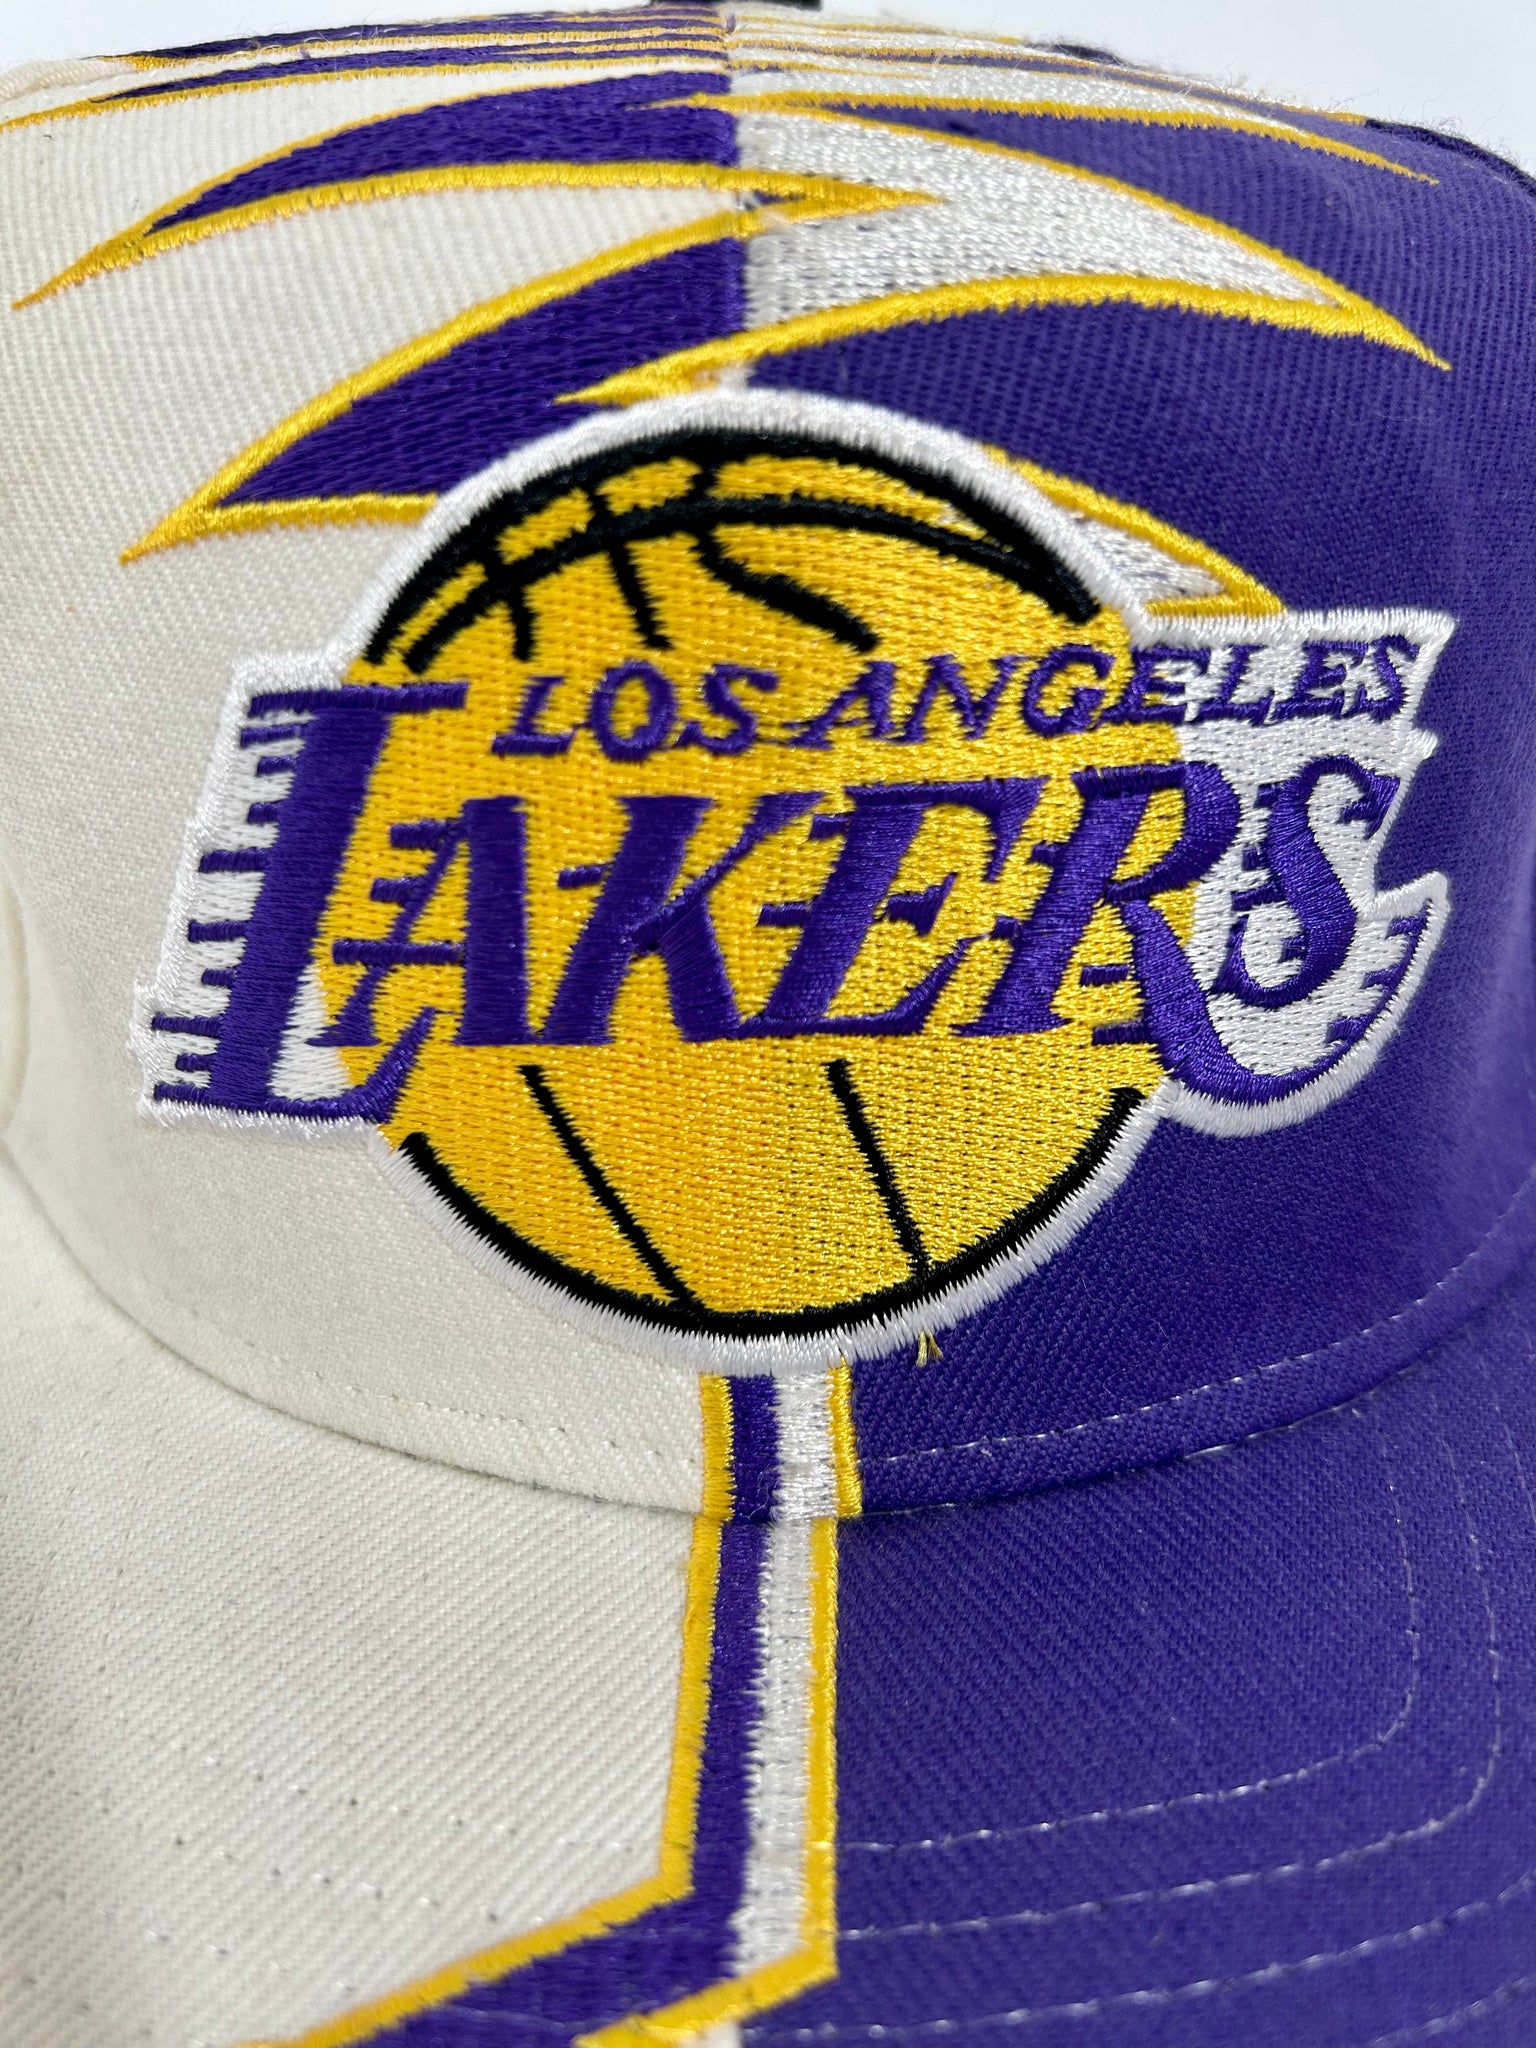 Vintage Los Angeles Hat